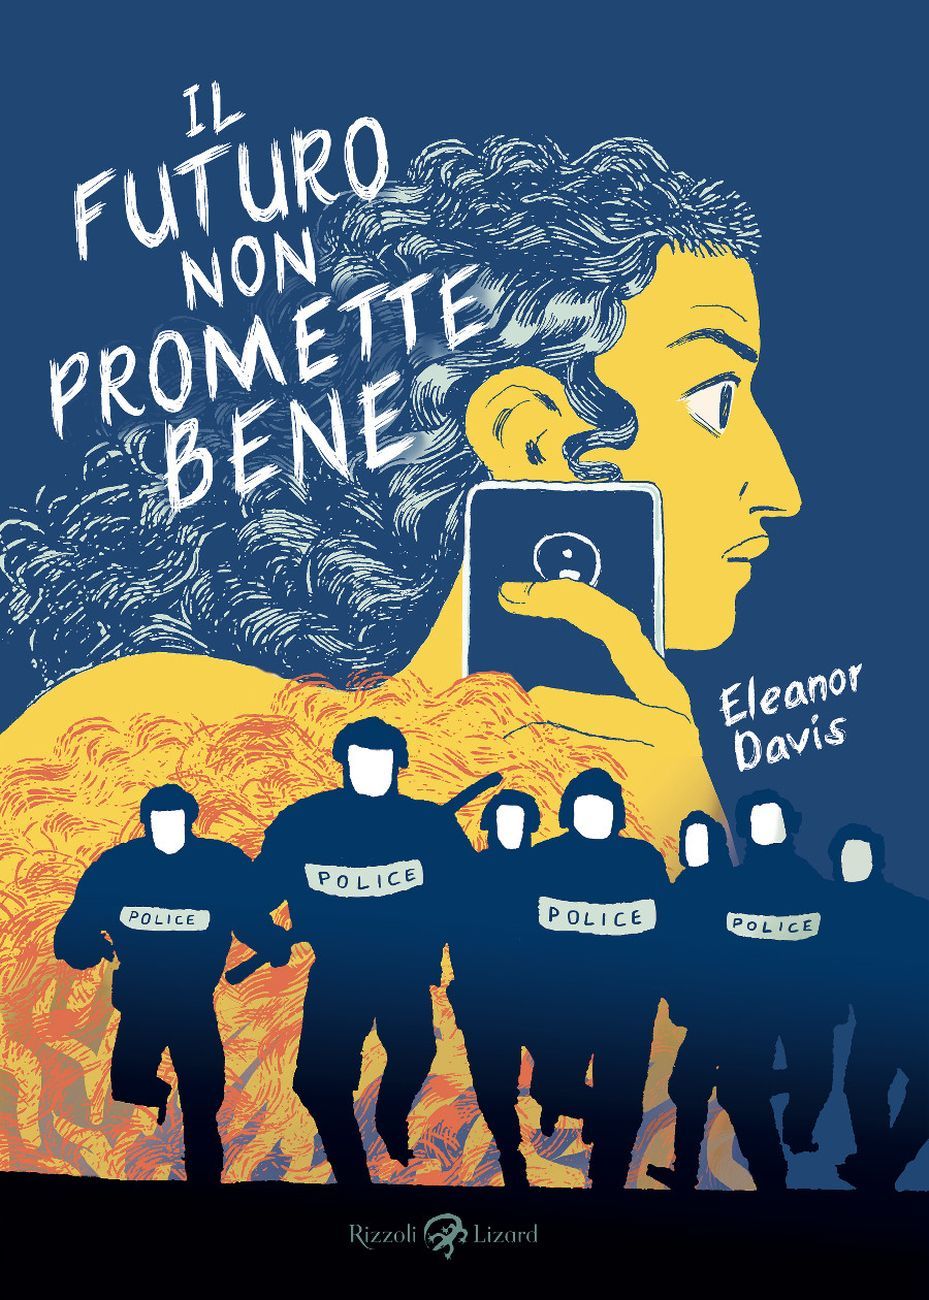 Eleanor Davis – Il futuro non promette bene (Rizzoli Lizard, Milano 2020)